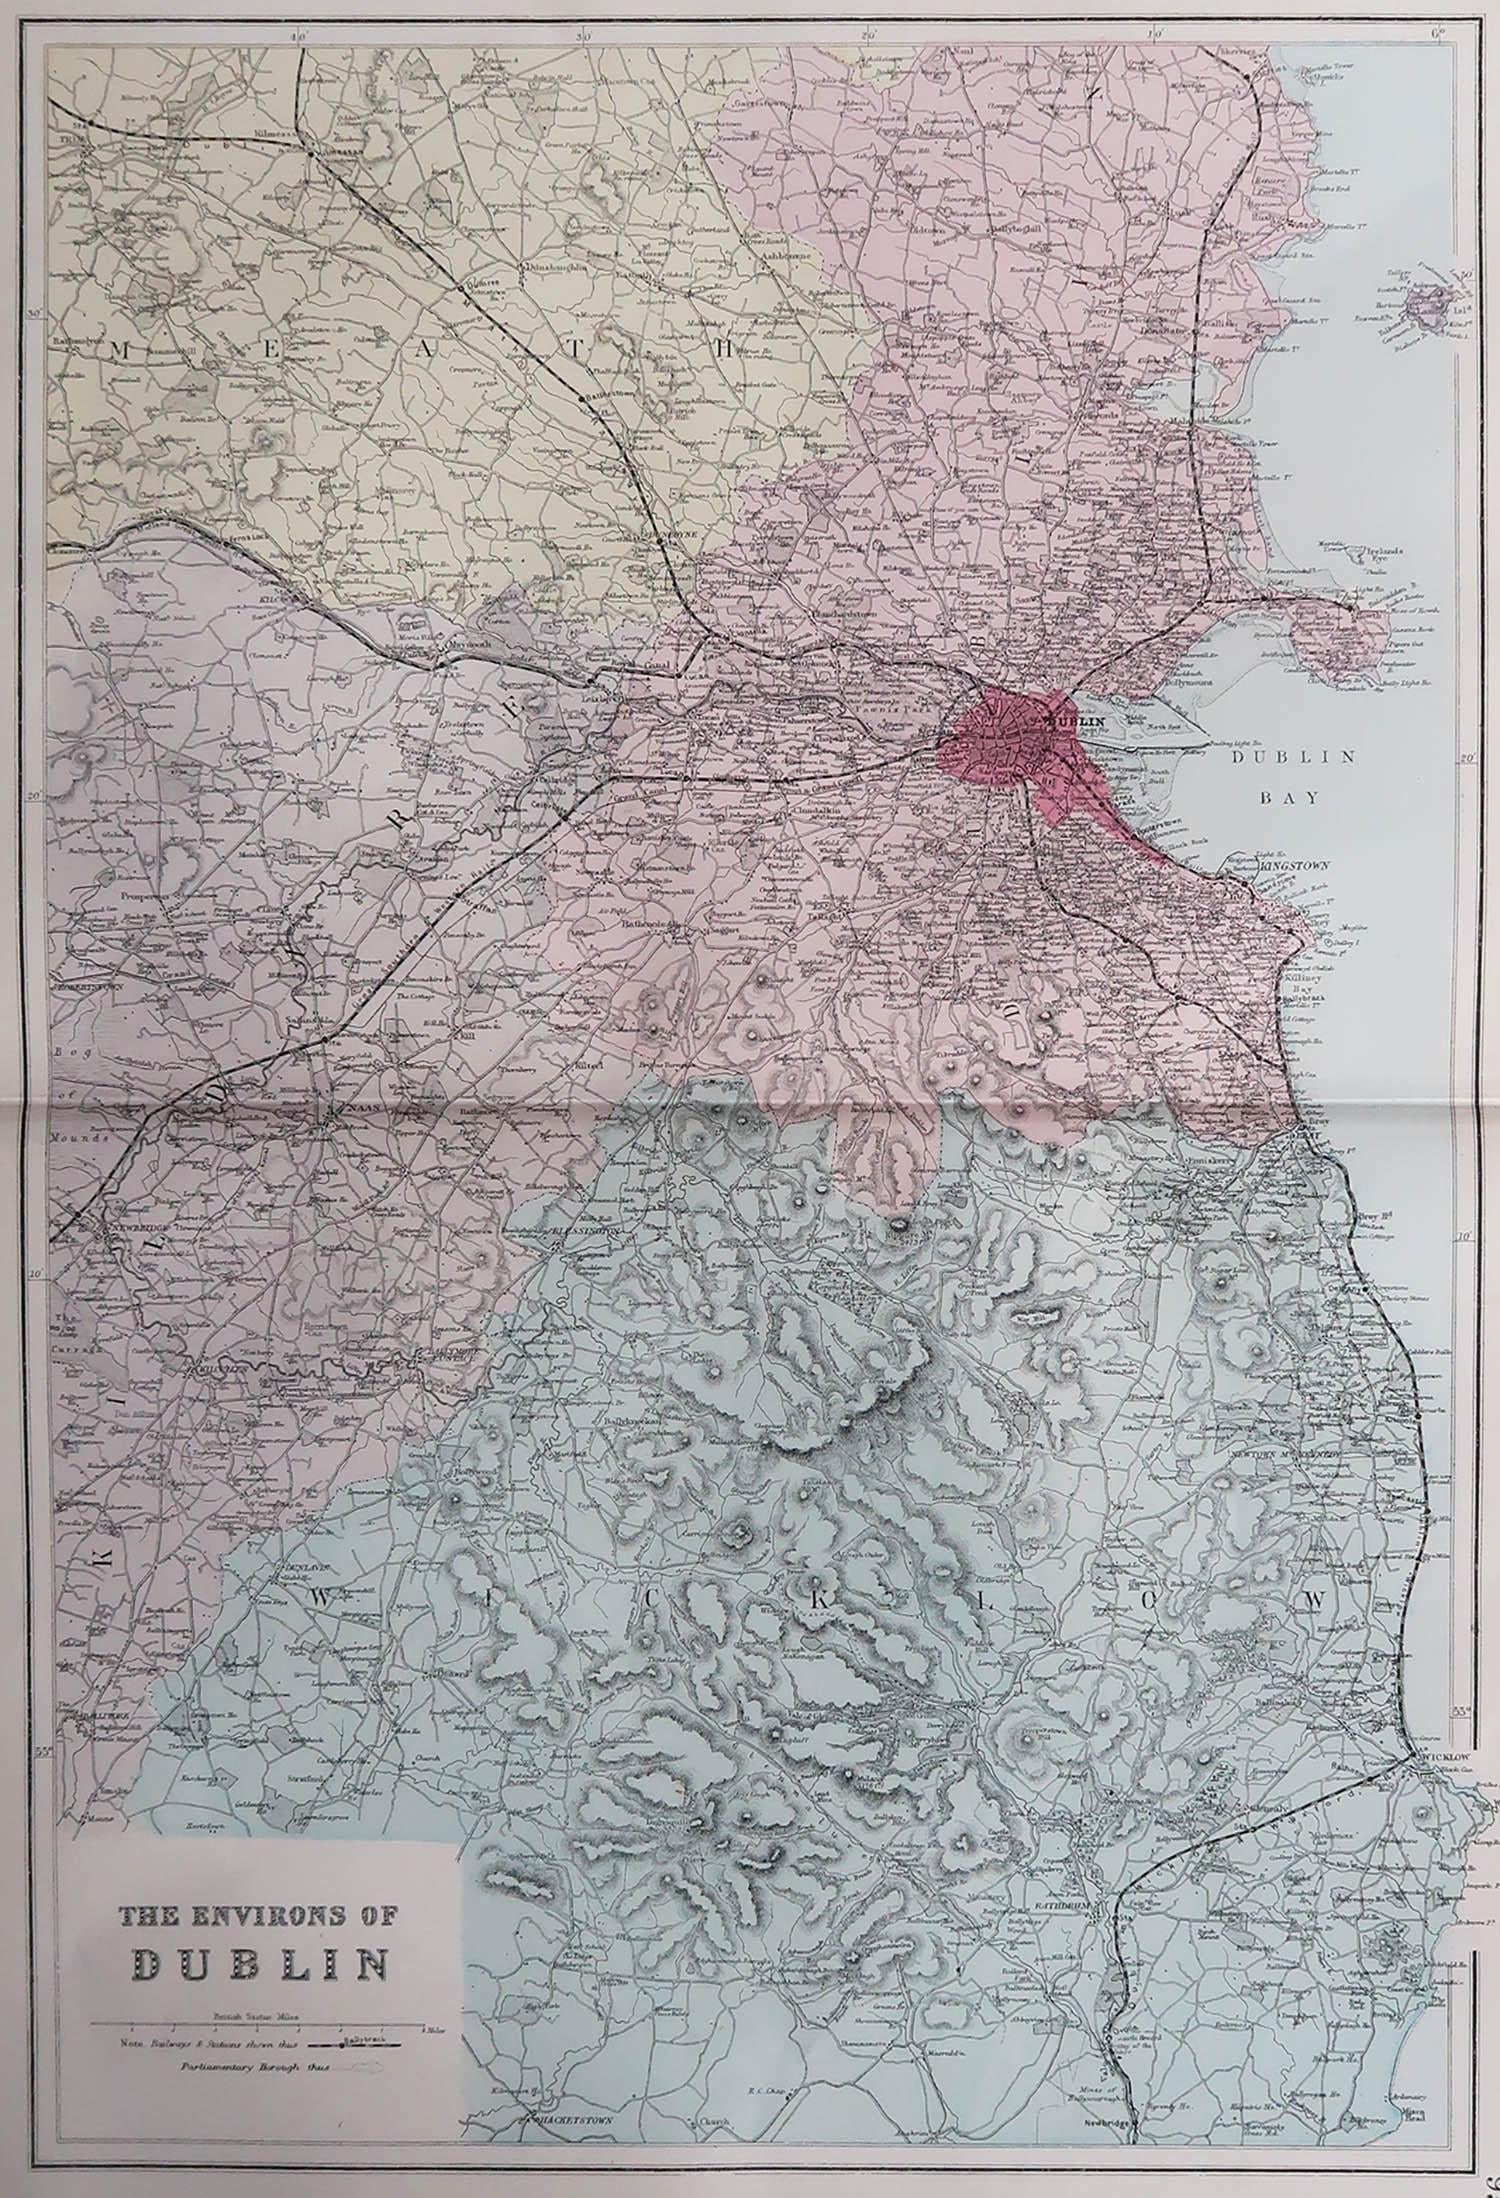 Großartige Karte der Umgebung von Dublin

Veröffentlicht um 1880

Ungerahmt

Kostenloser Versand.

